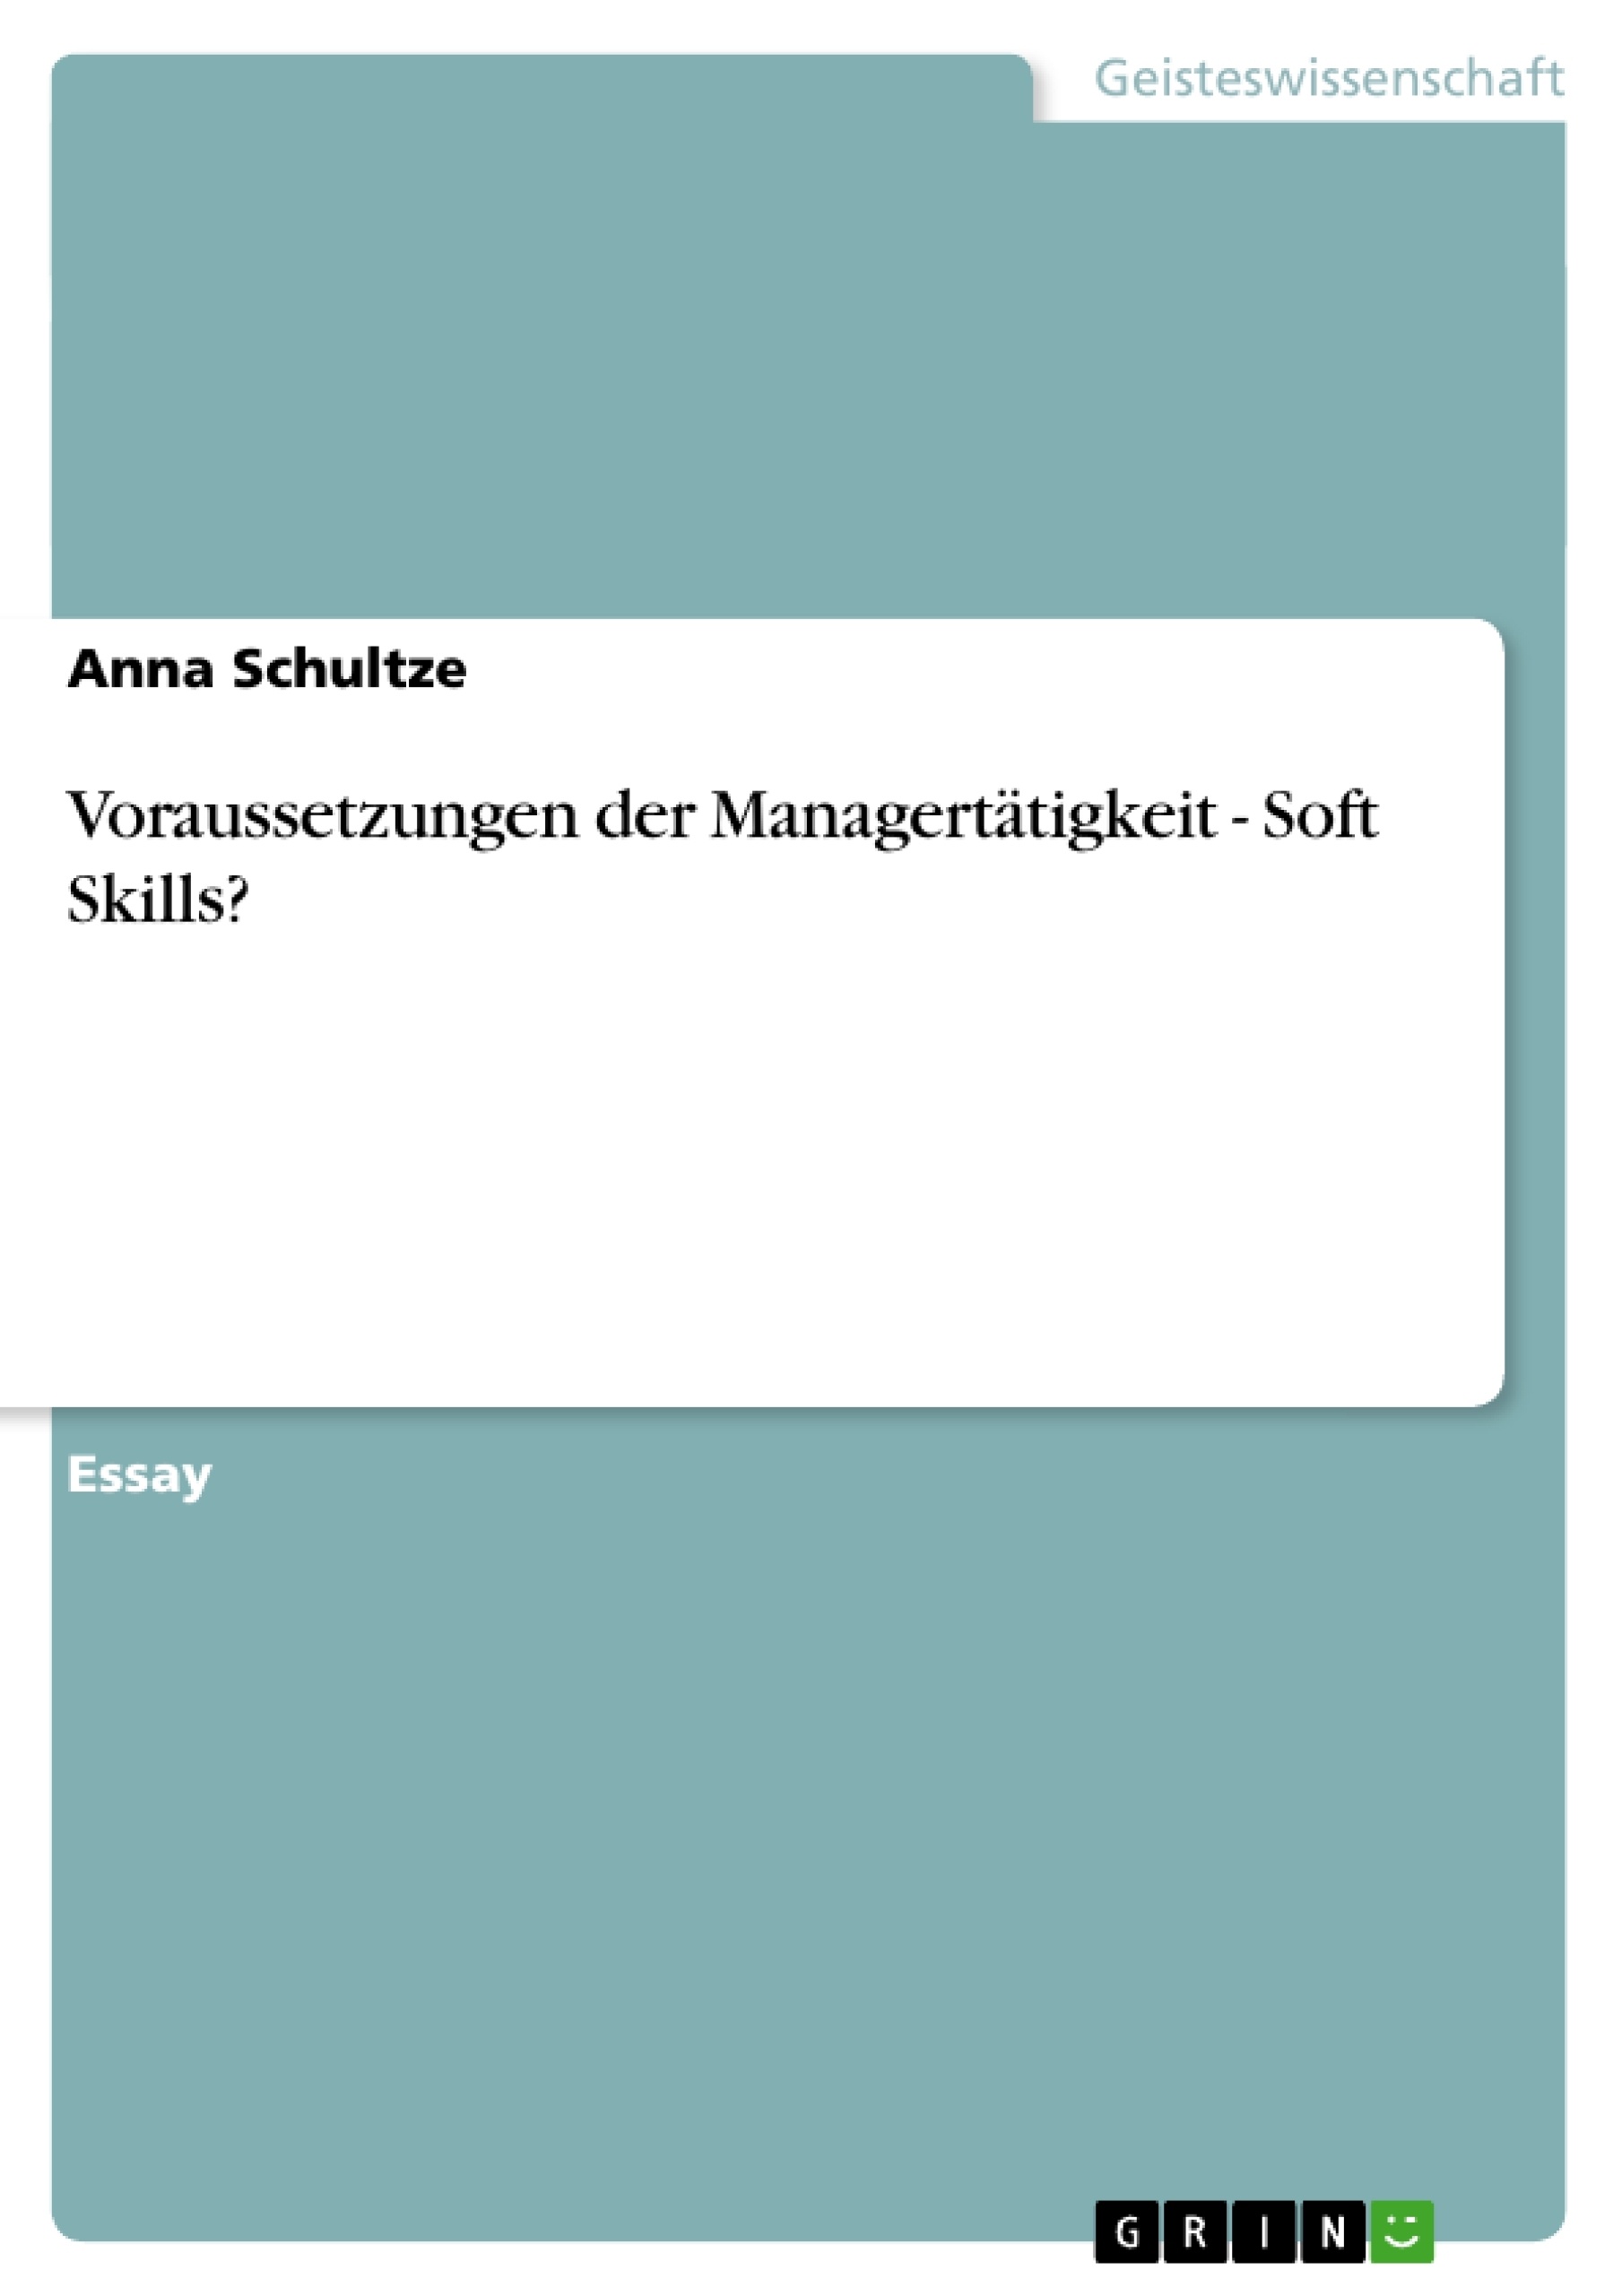 Título: Voraussetzungen der Managertätigkeit - Soft Skills?